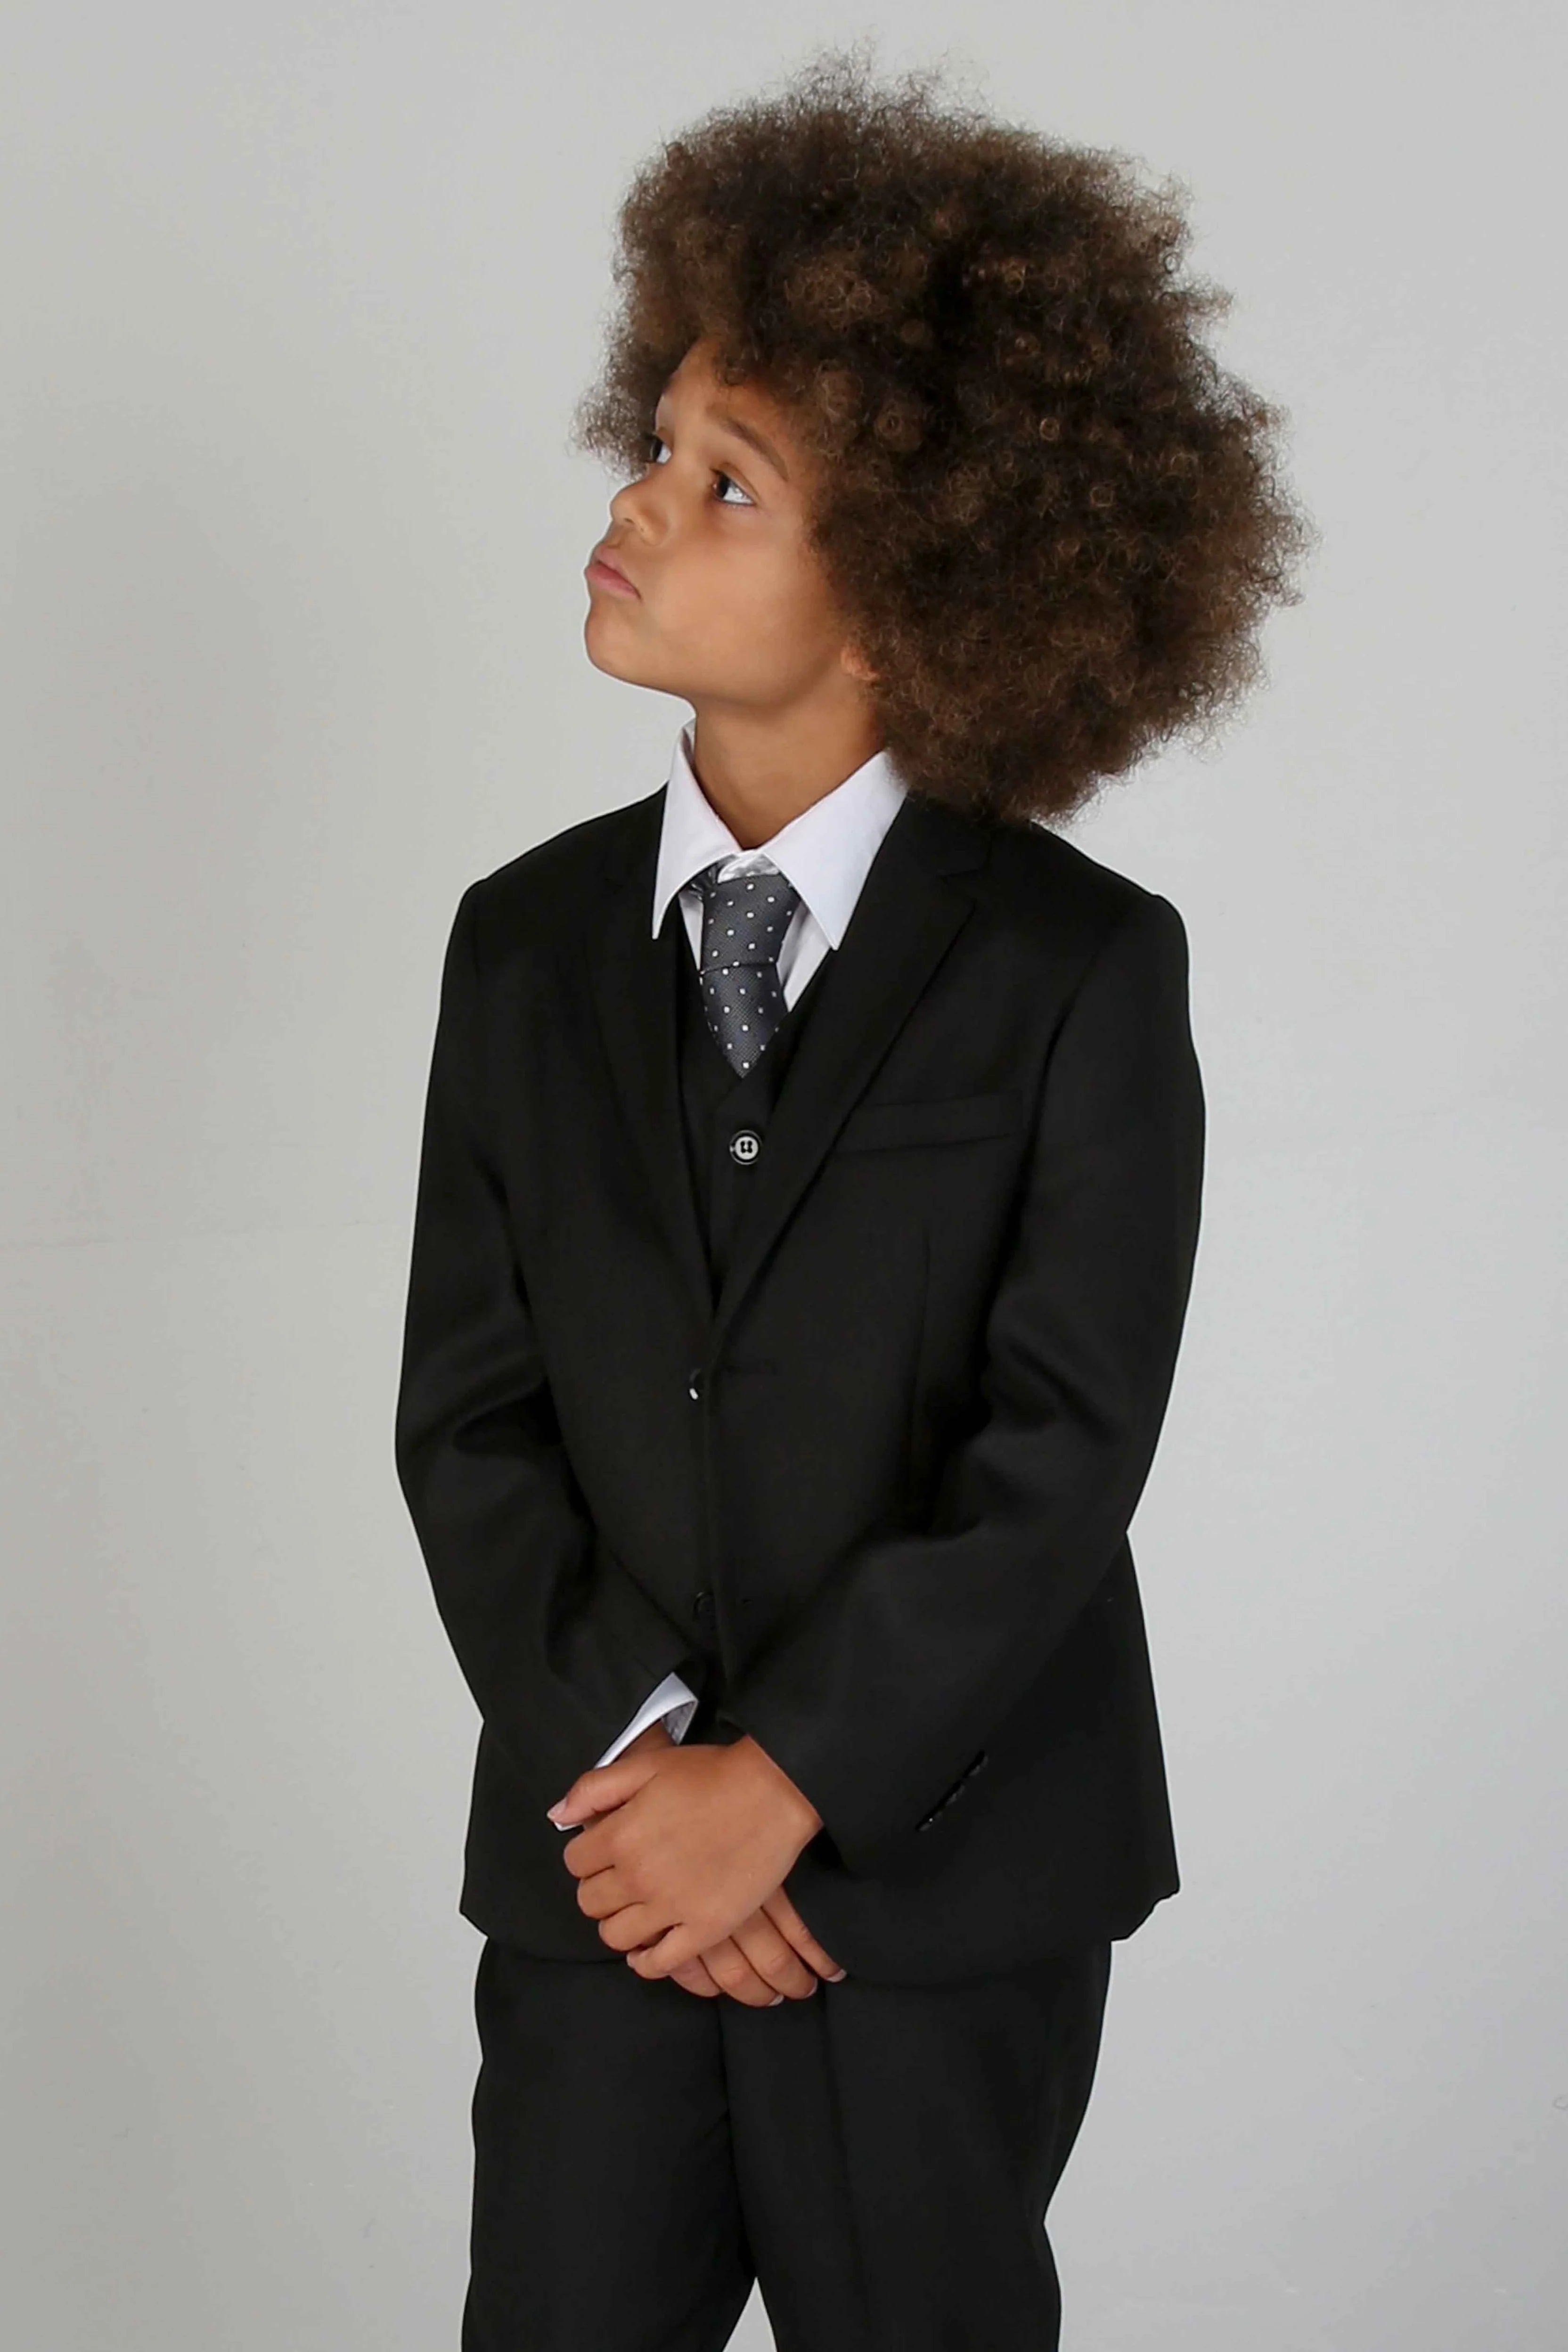 Paul Andrew Children - Device - Boy's Parker Black 5pc Suit